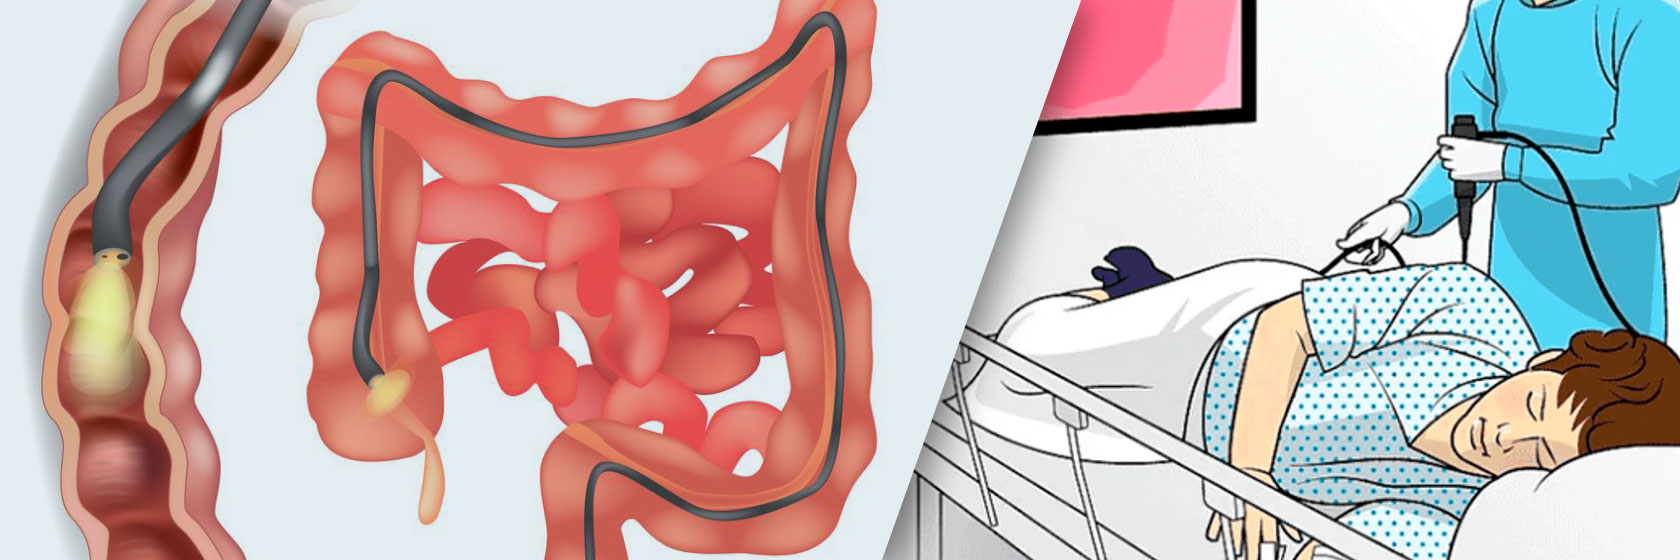 На рисунке – процедура колоноскопии и изображение кишечника